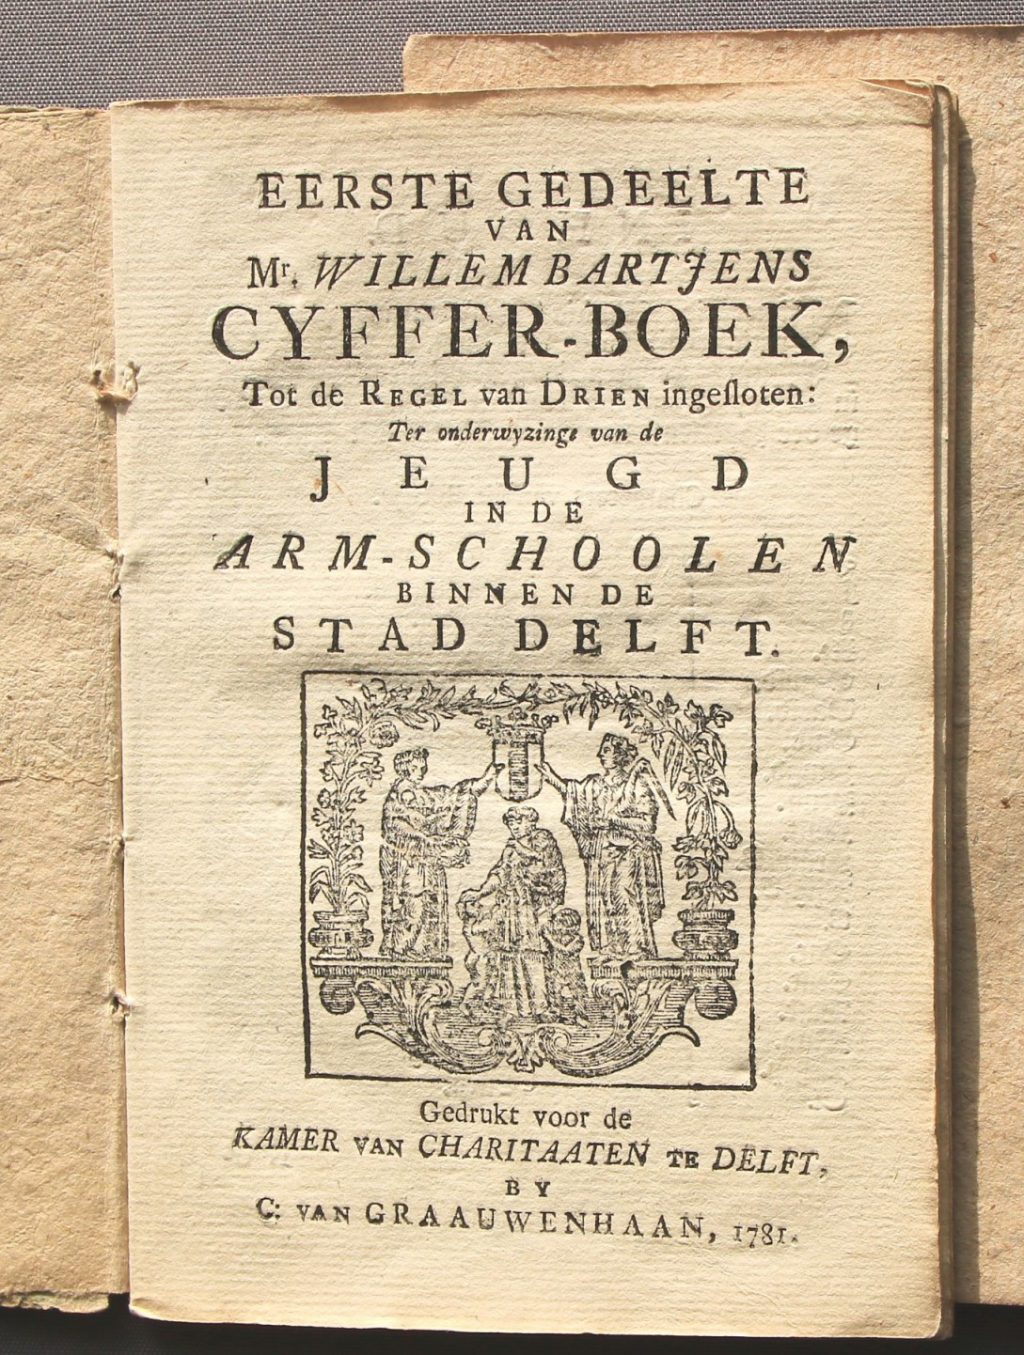 Cyfferboek van Willem Bartjens, in 1781 gedrukt voor de Delftse armenscholen (Archief 447, inv.nr 2183)